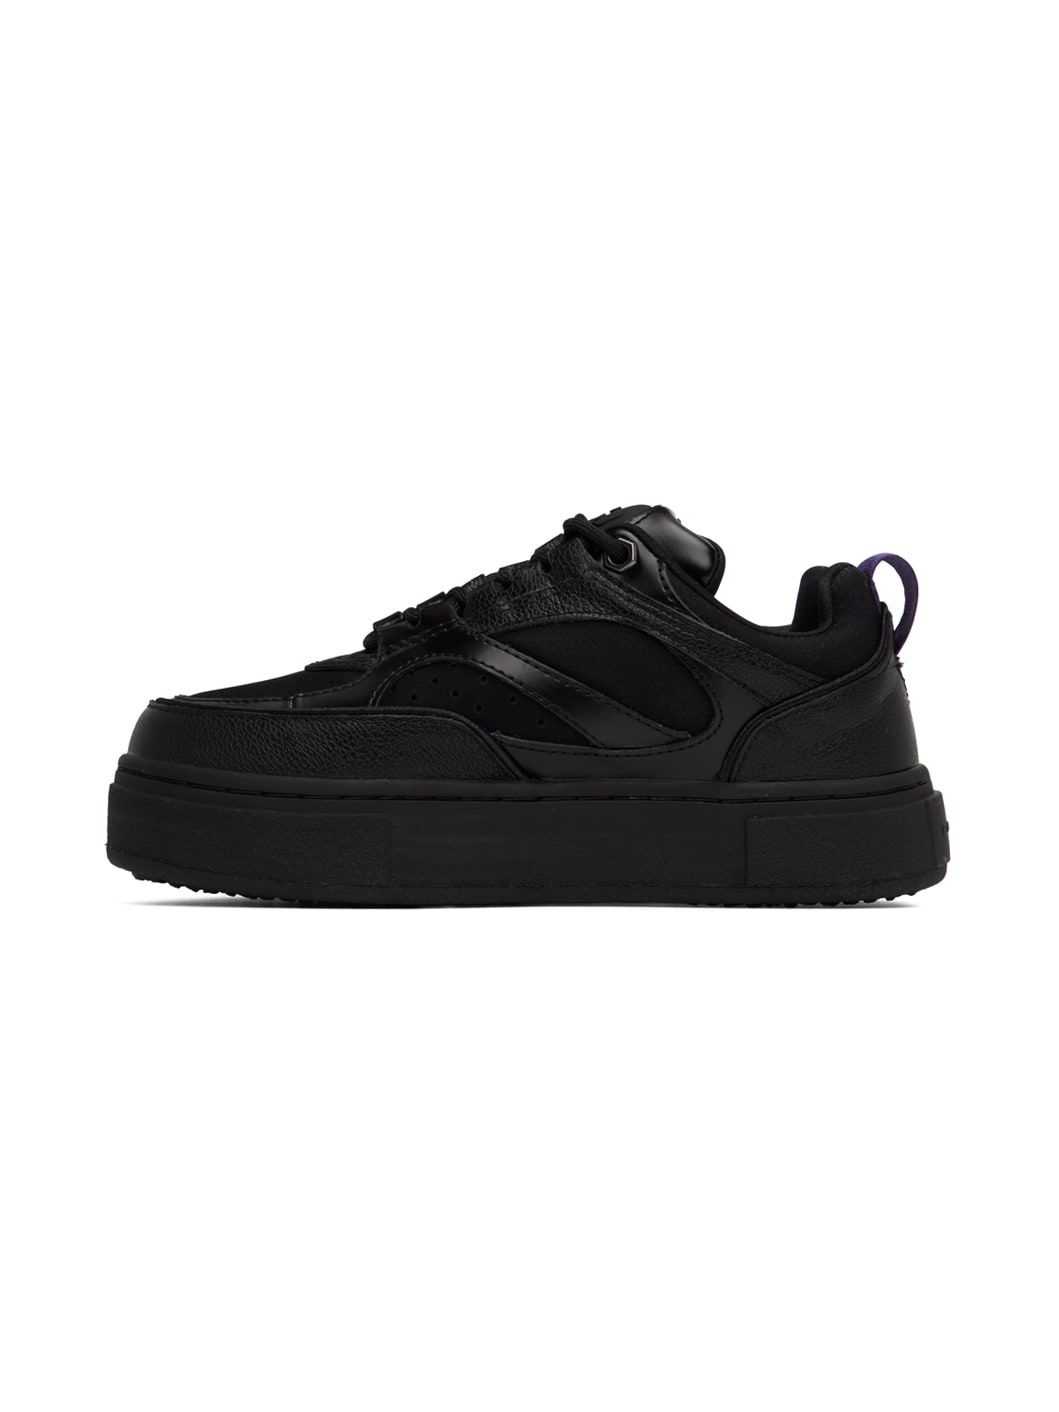 Black Sidney Sneakers - 3